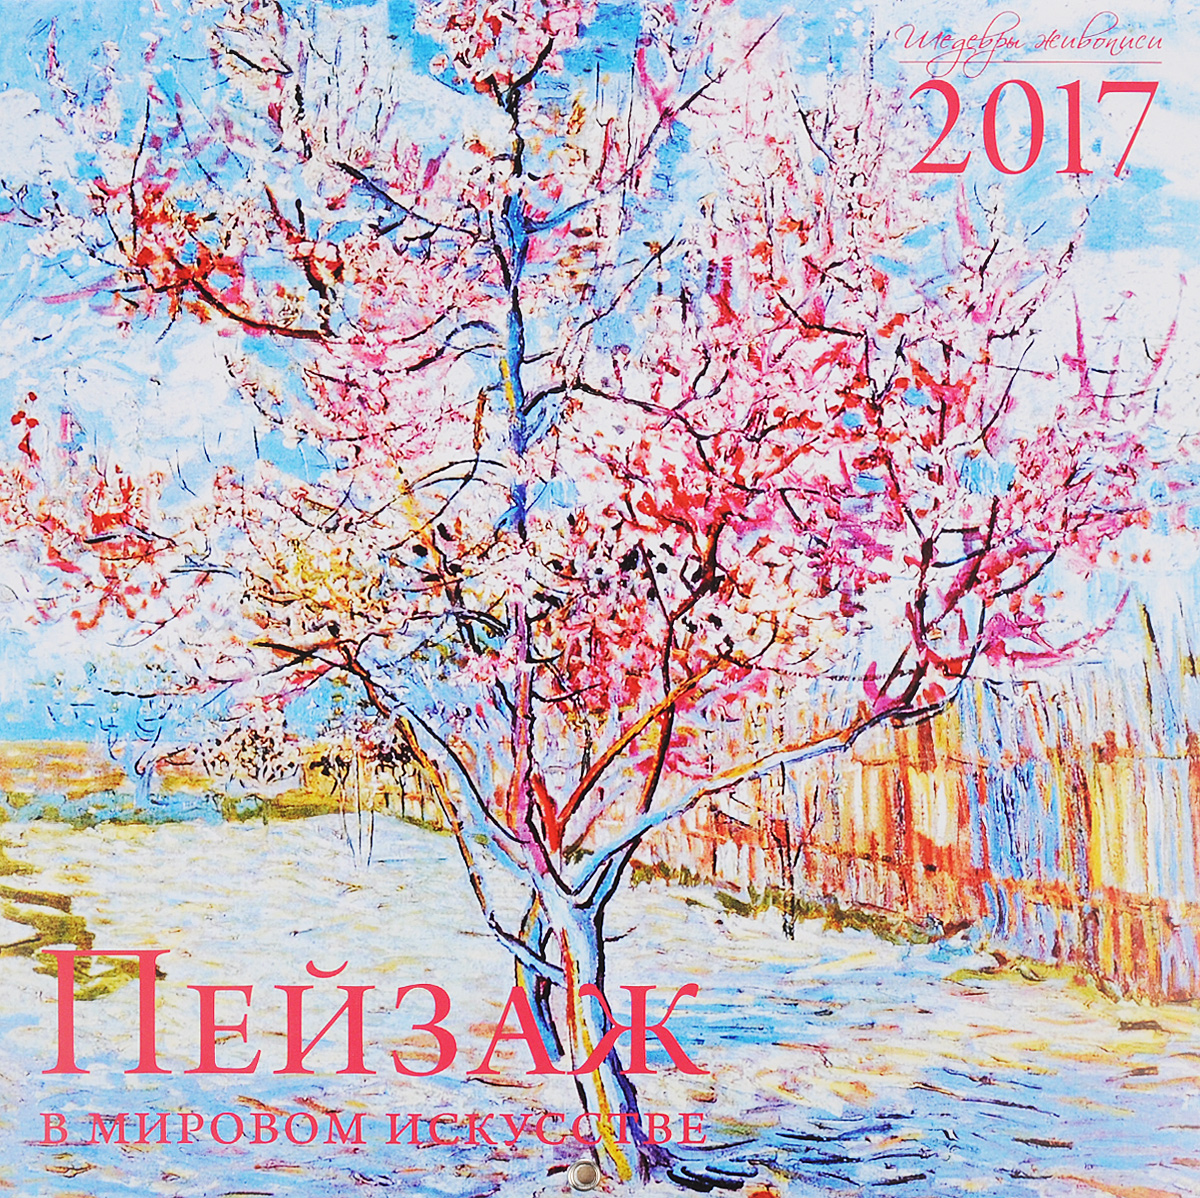 Пейзаж в мировом искусстве. Календарь настенный на 2017 год